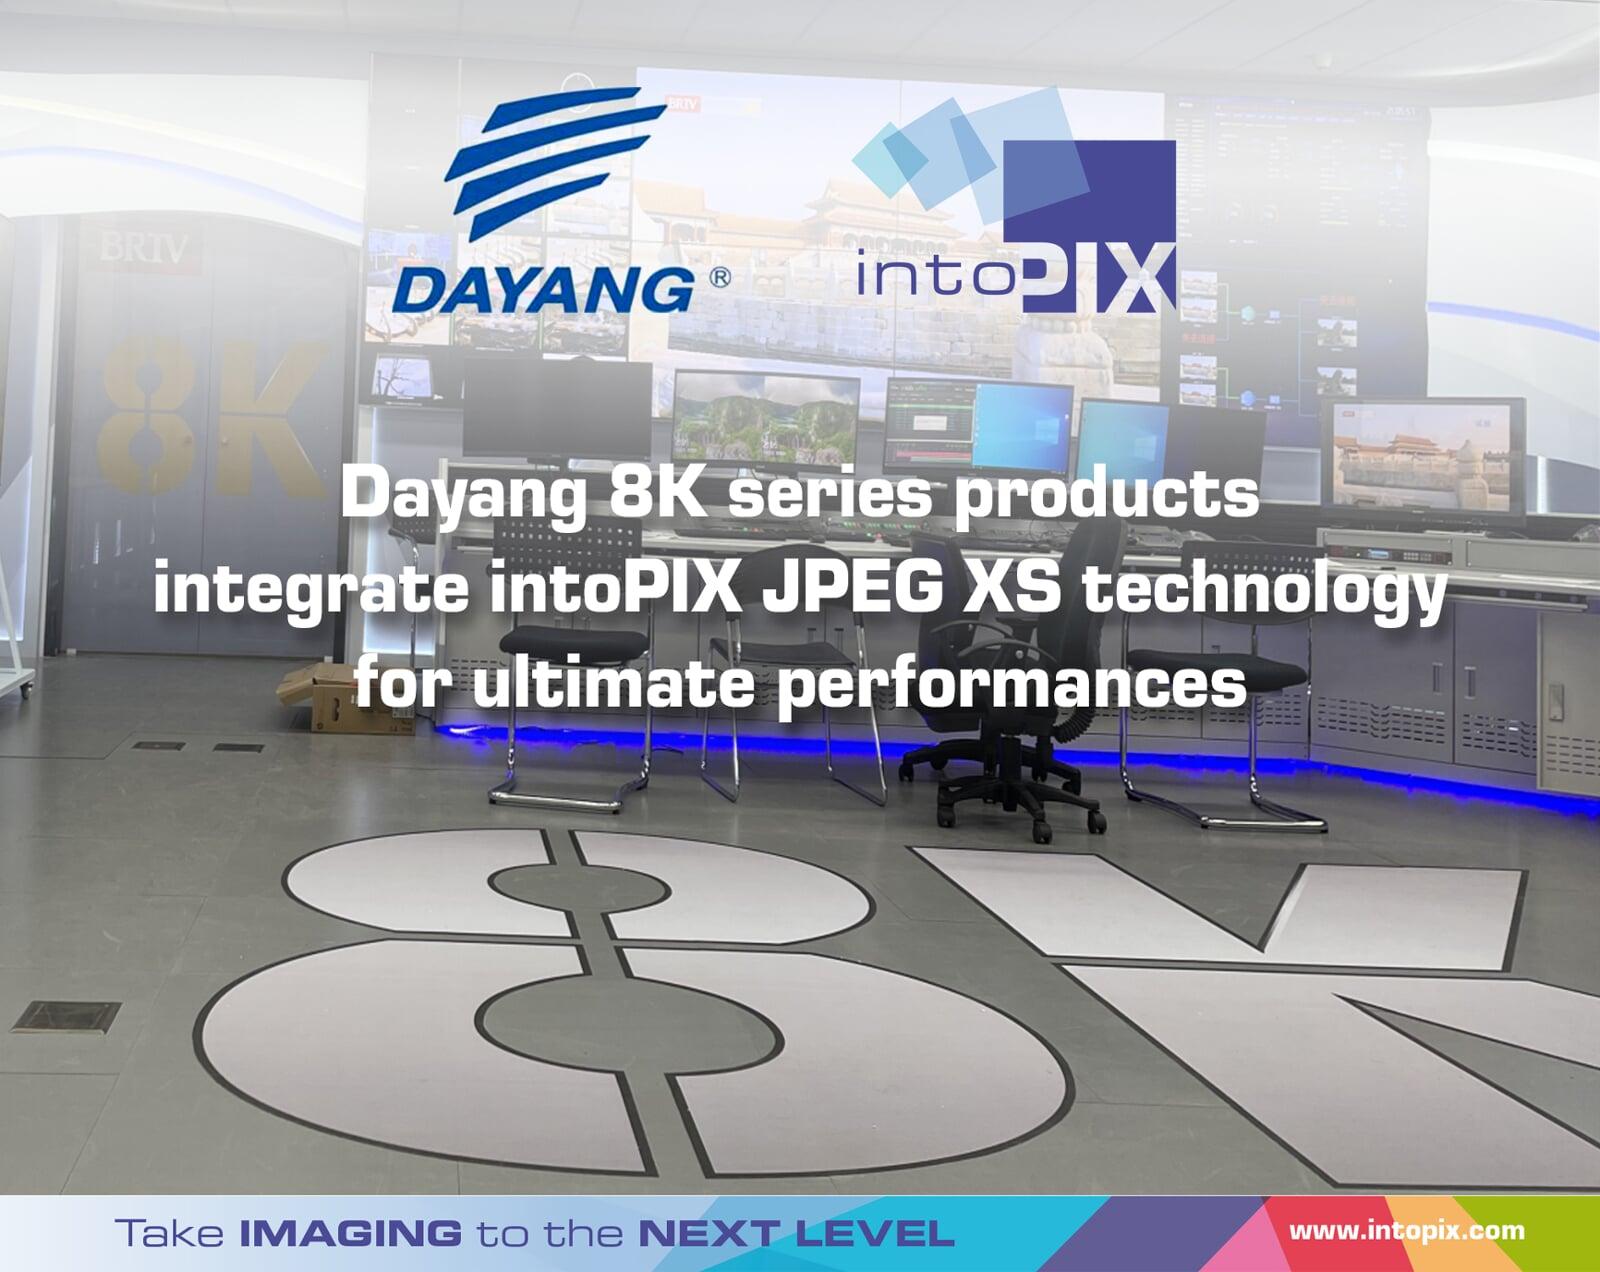 Les produits de la série 8K de Dayang intègrent la technologie intoPIX JPEG  XS pour des performances ultimes.